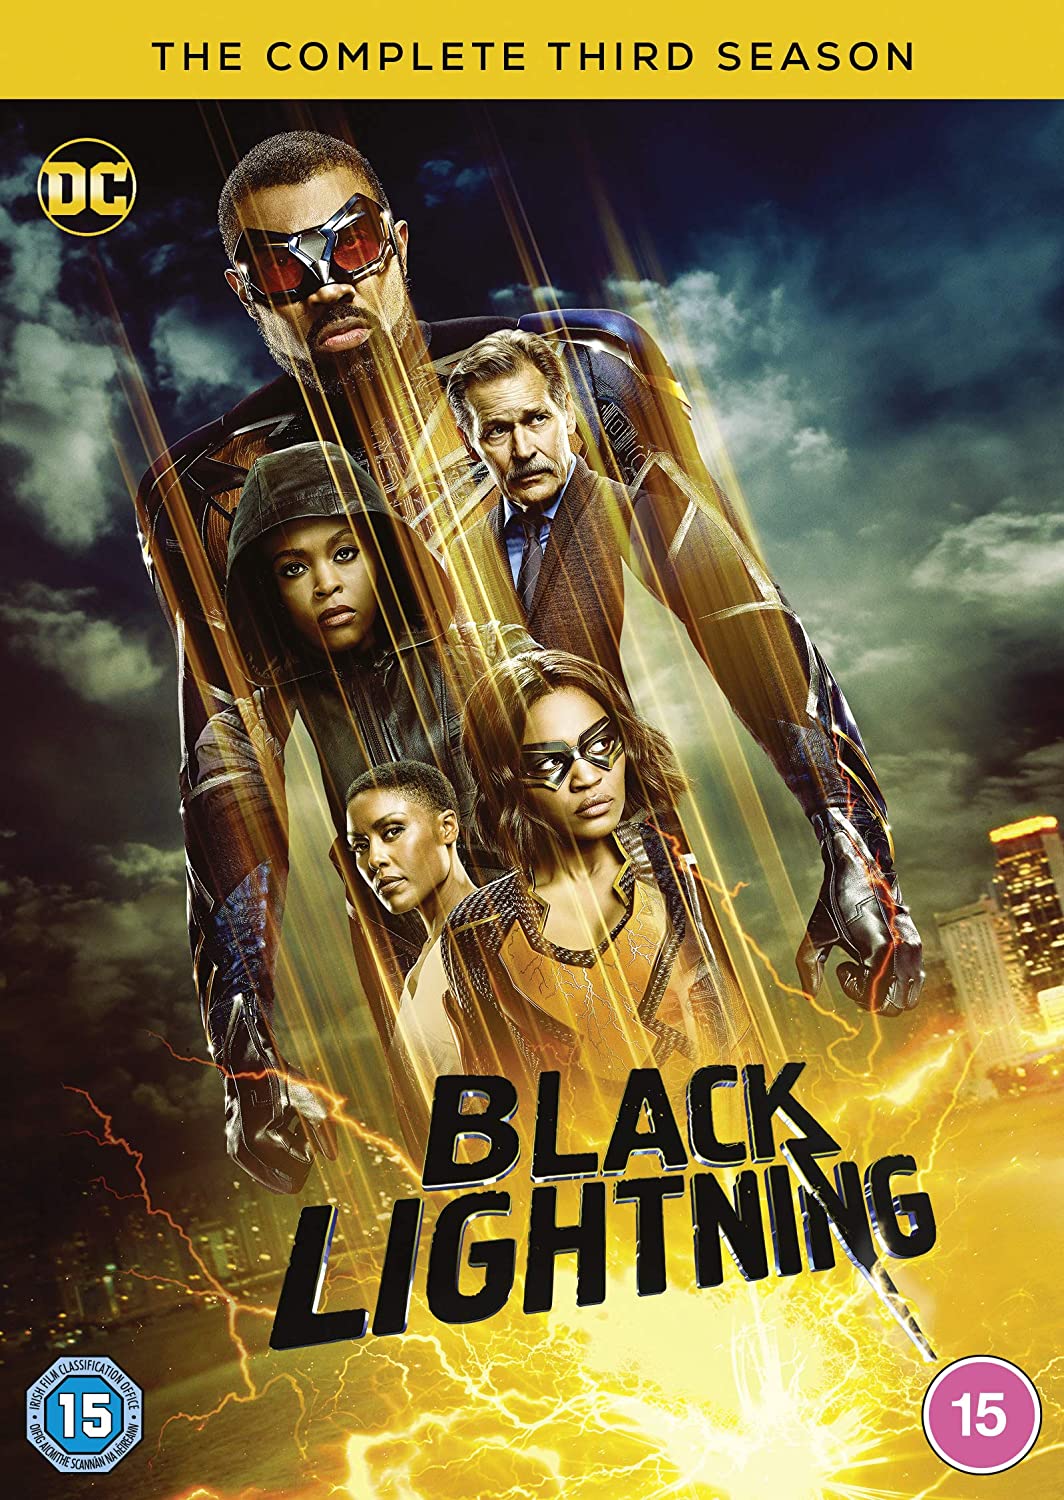 Black Lightning: Season 3 (DVD)